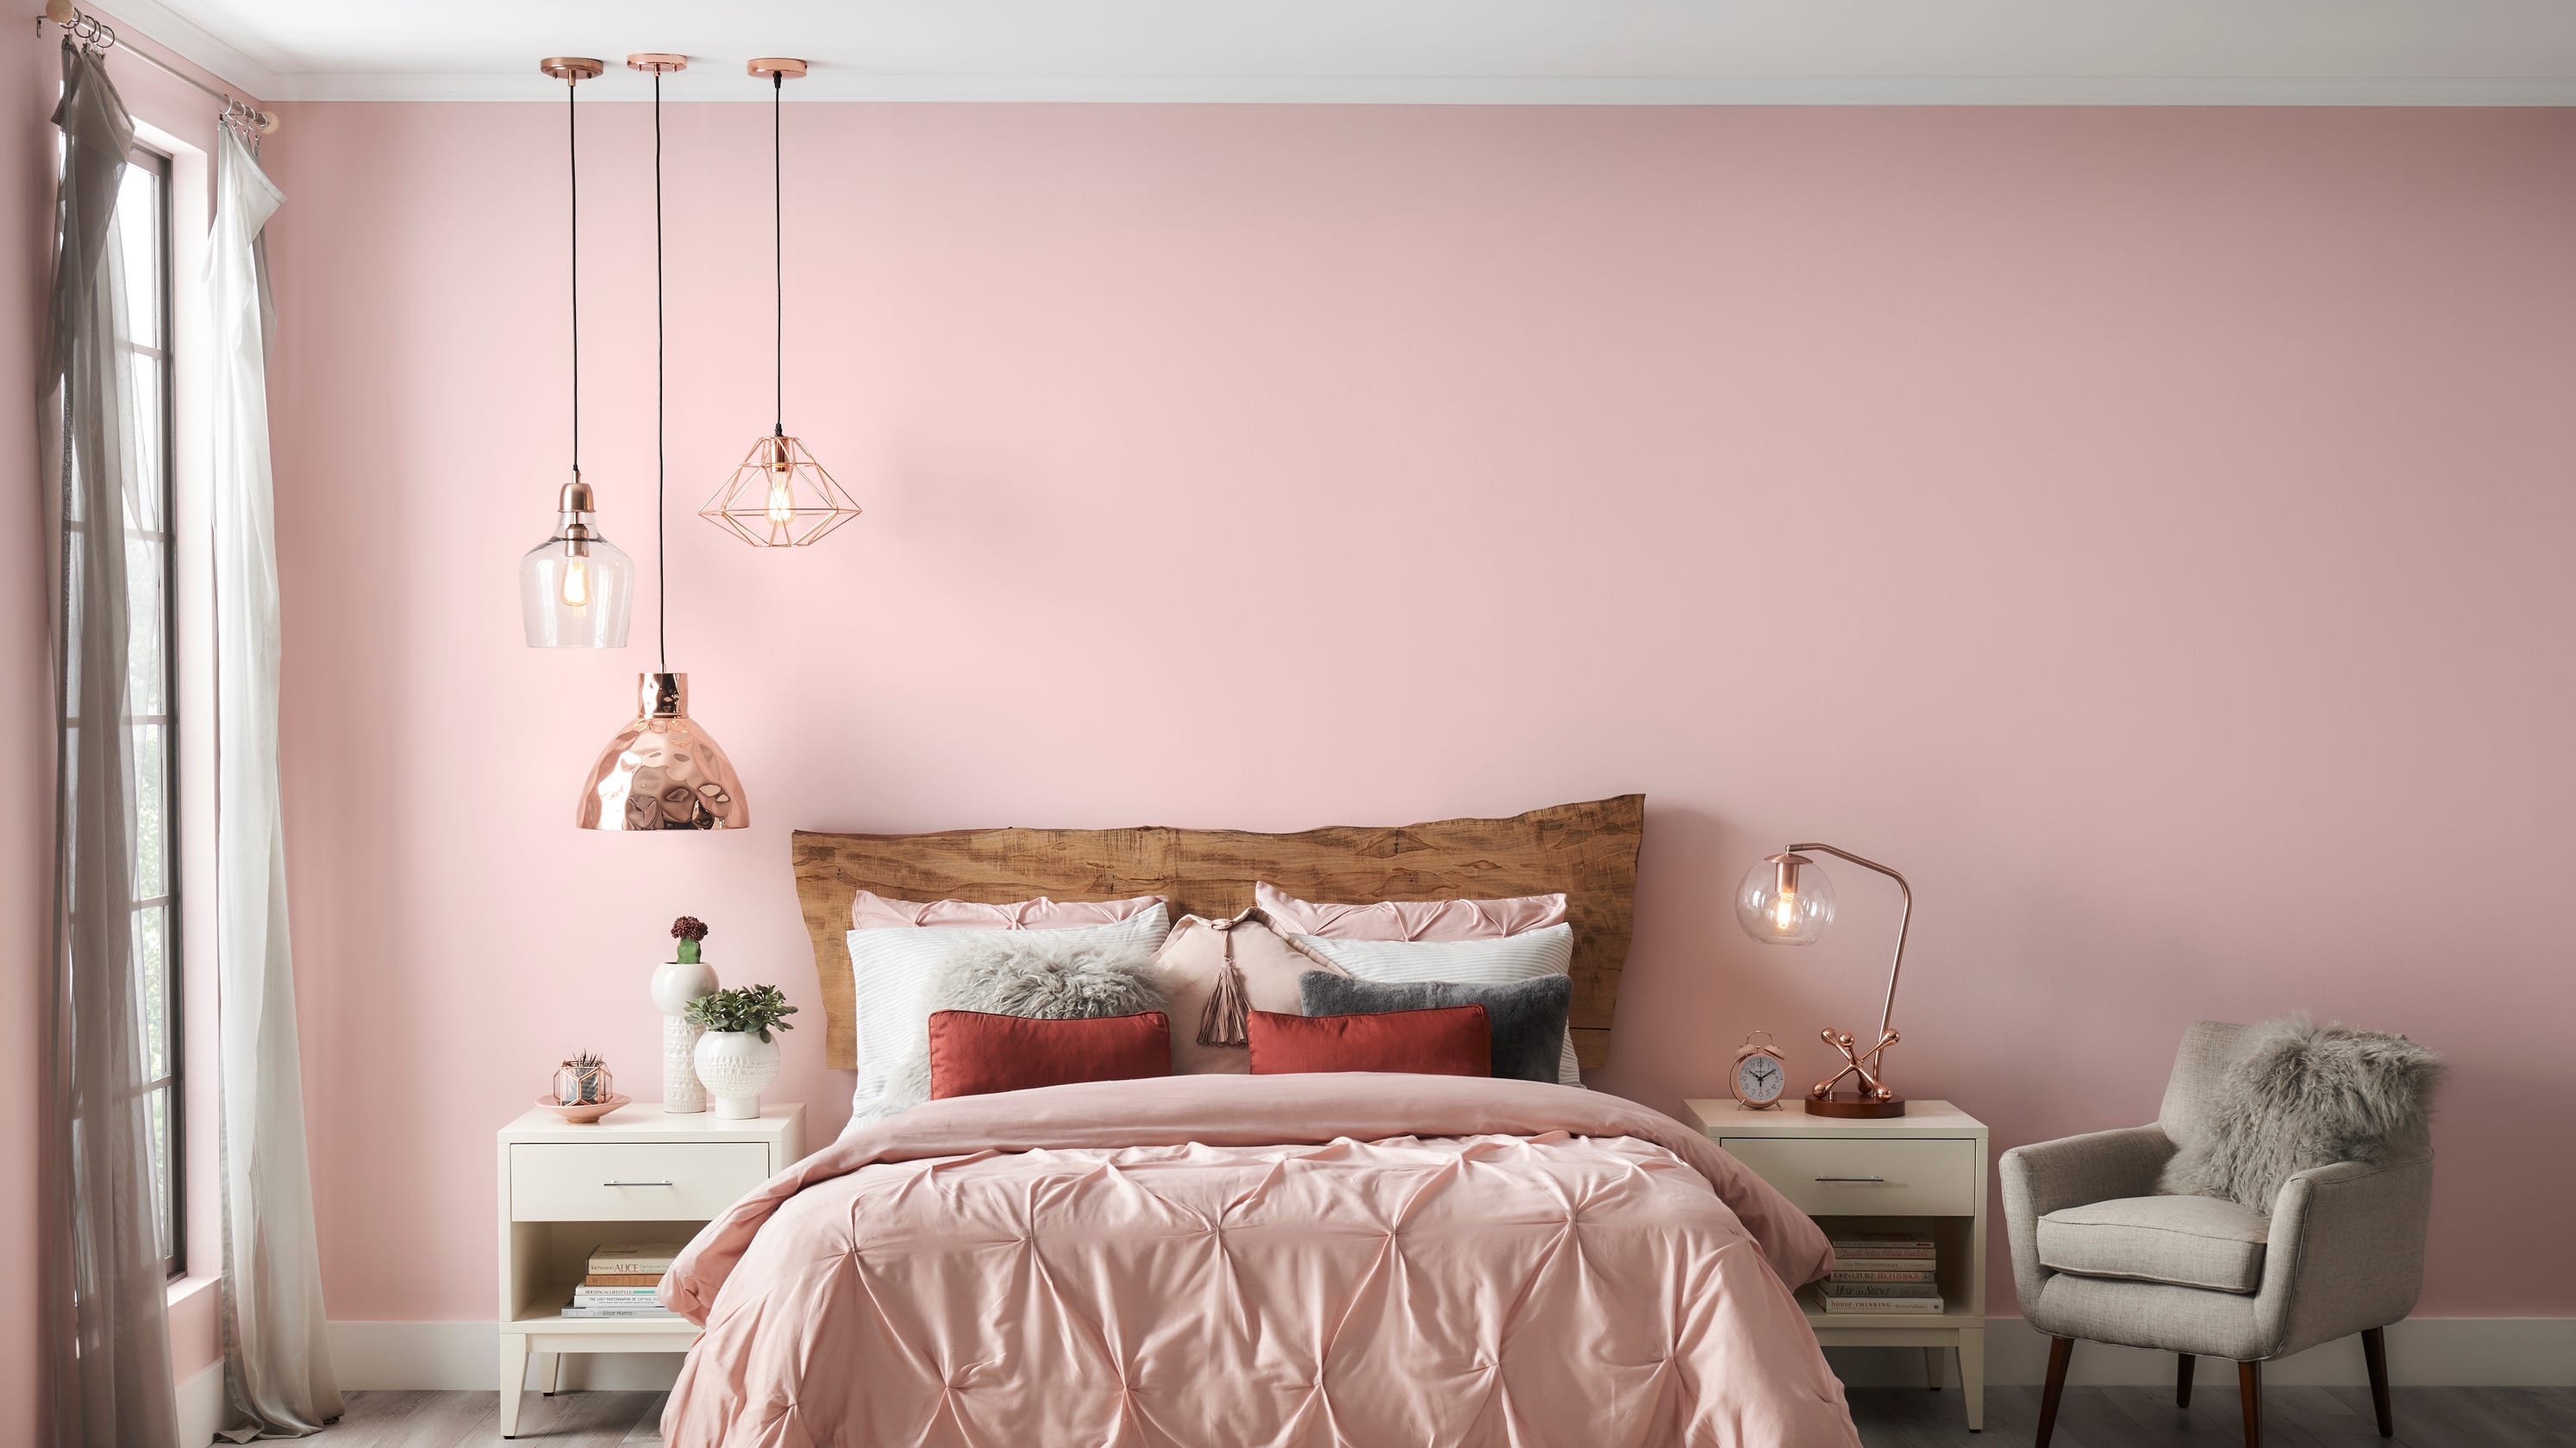 pretty in pink home decor